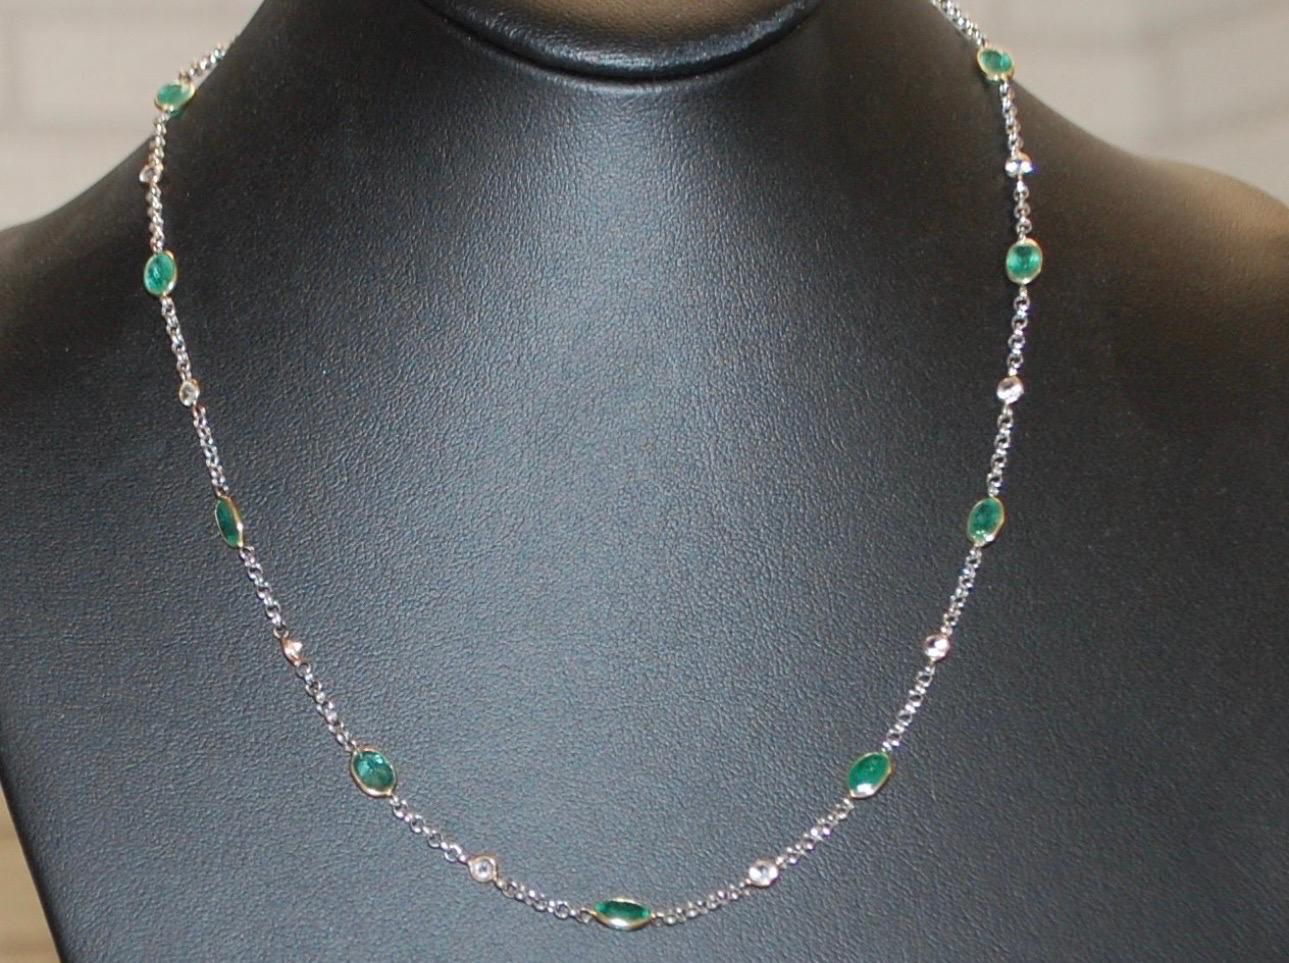 Atemberaubend elegante Smaragd- und Diamant-Halskette mit passenden ovalen Smaragden (kolumbianischer Herkunft) Kolumbianische Smaragde sind bläulich grün und in der Regel transparenter, diese Halskette ist mit konfliktfreien Diamanten laut